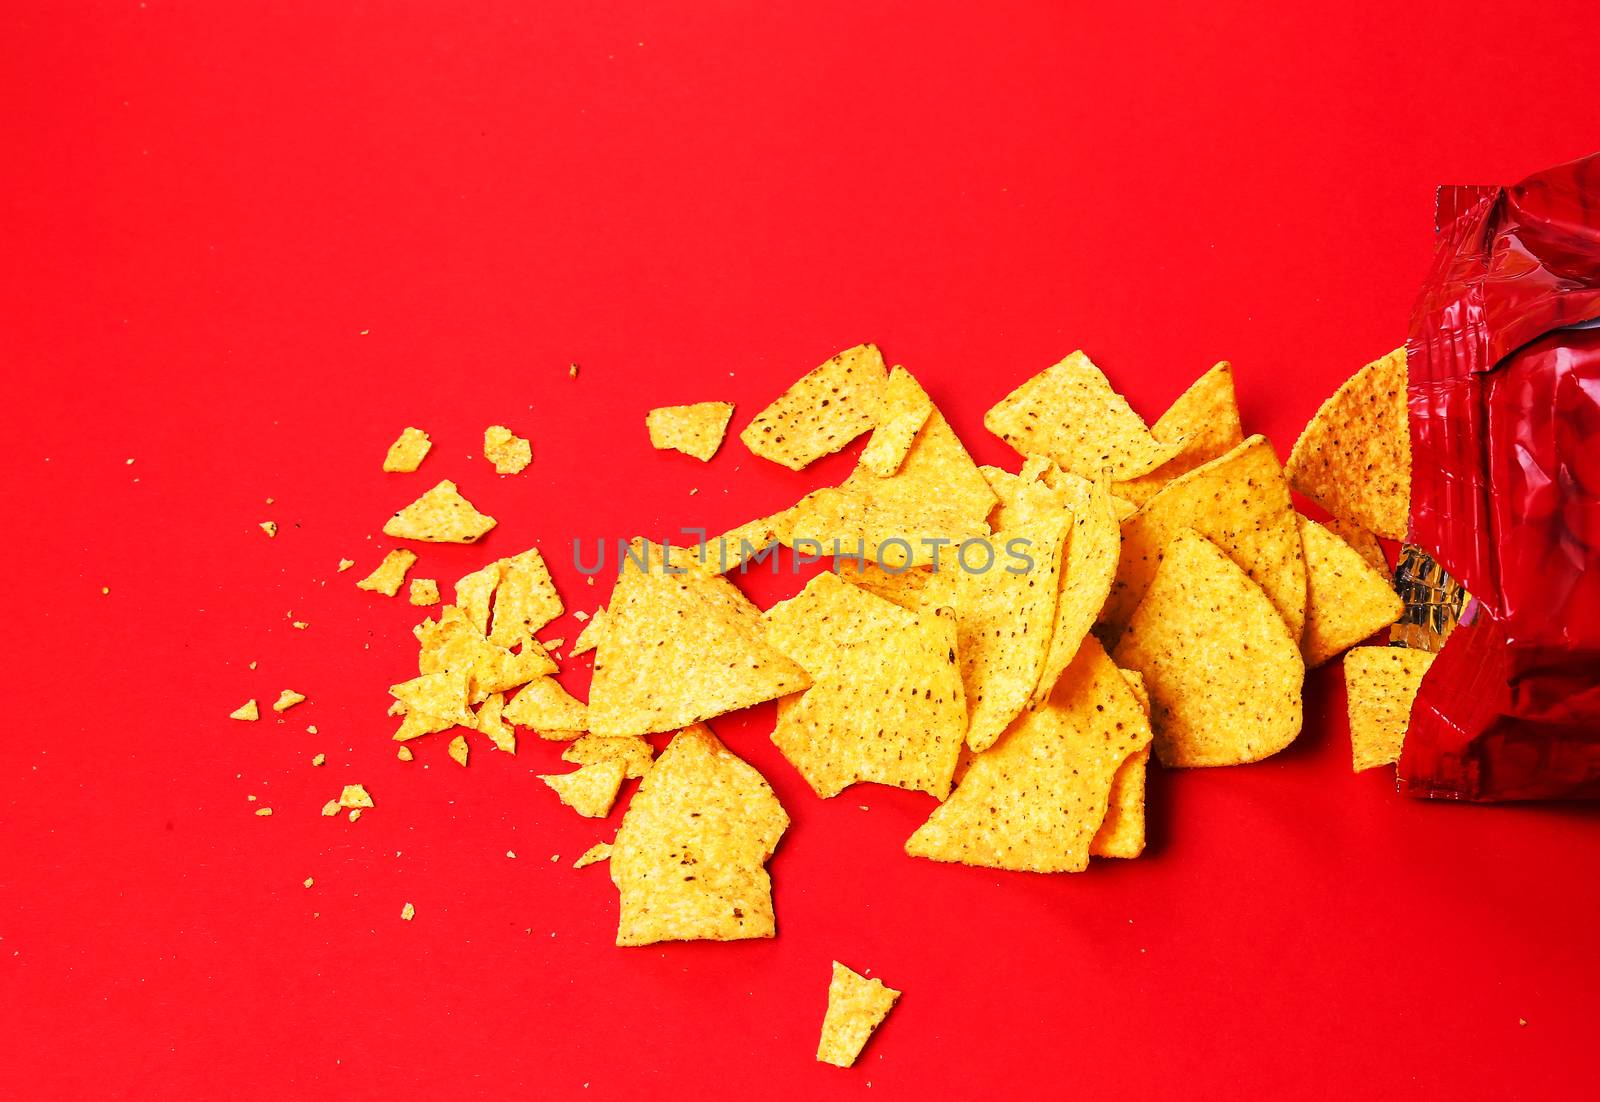 Potato chips by rufatjumali